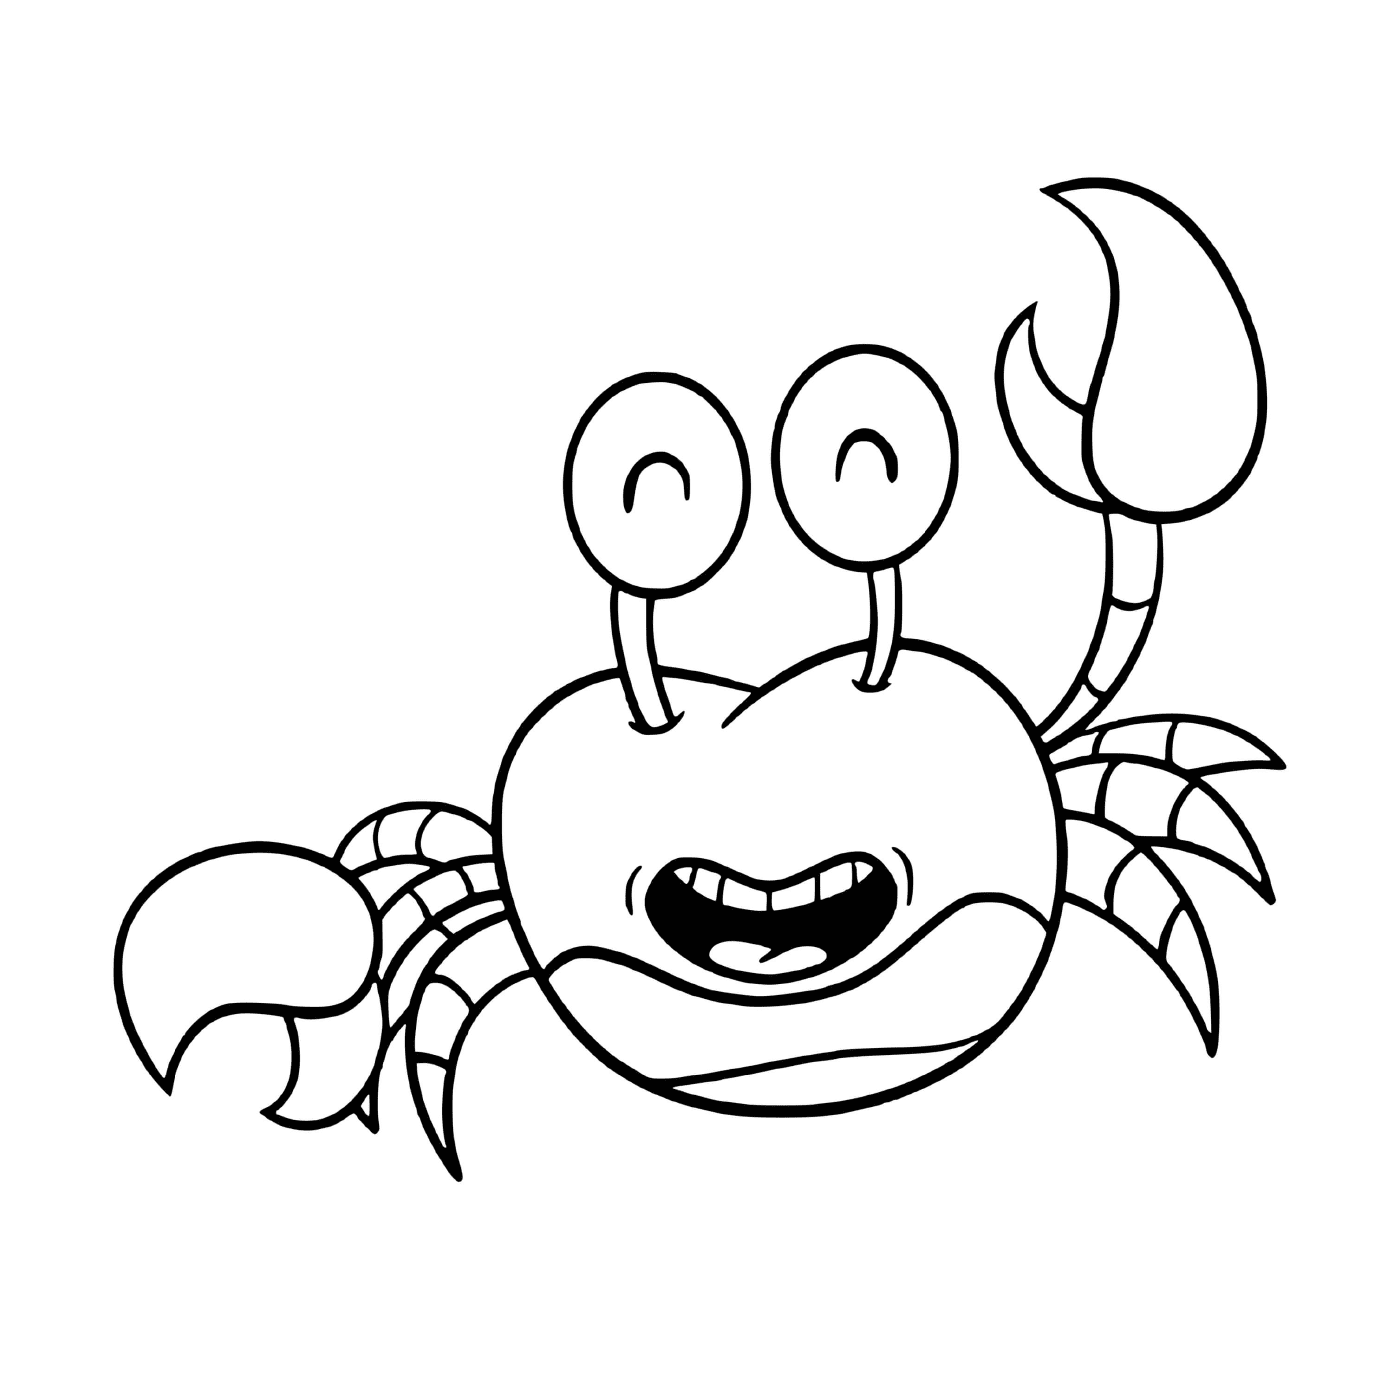   Un crabe amusant avec de grands yeux, style cartoon 